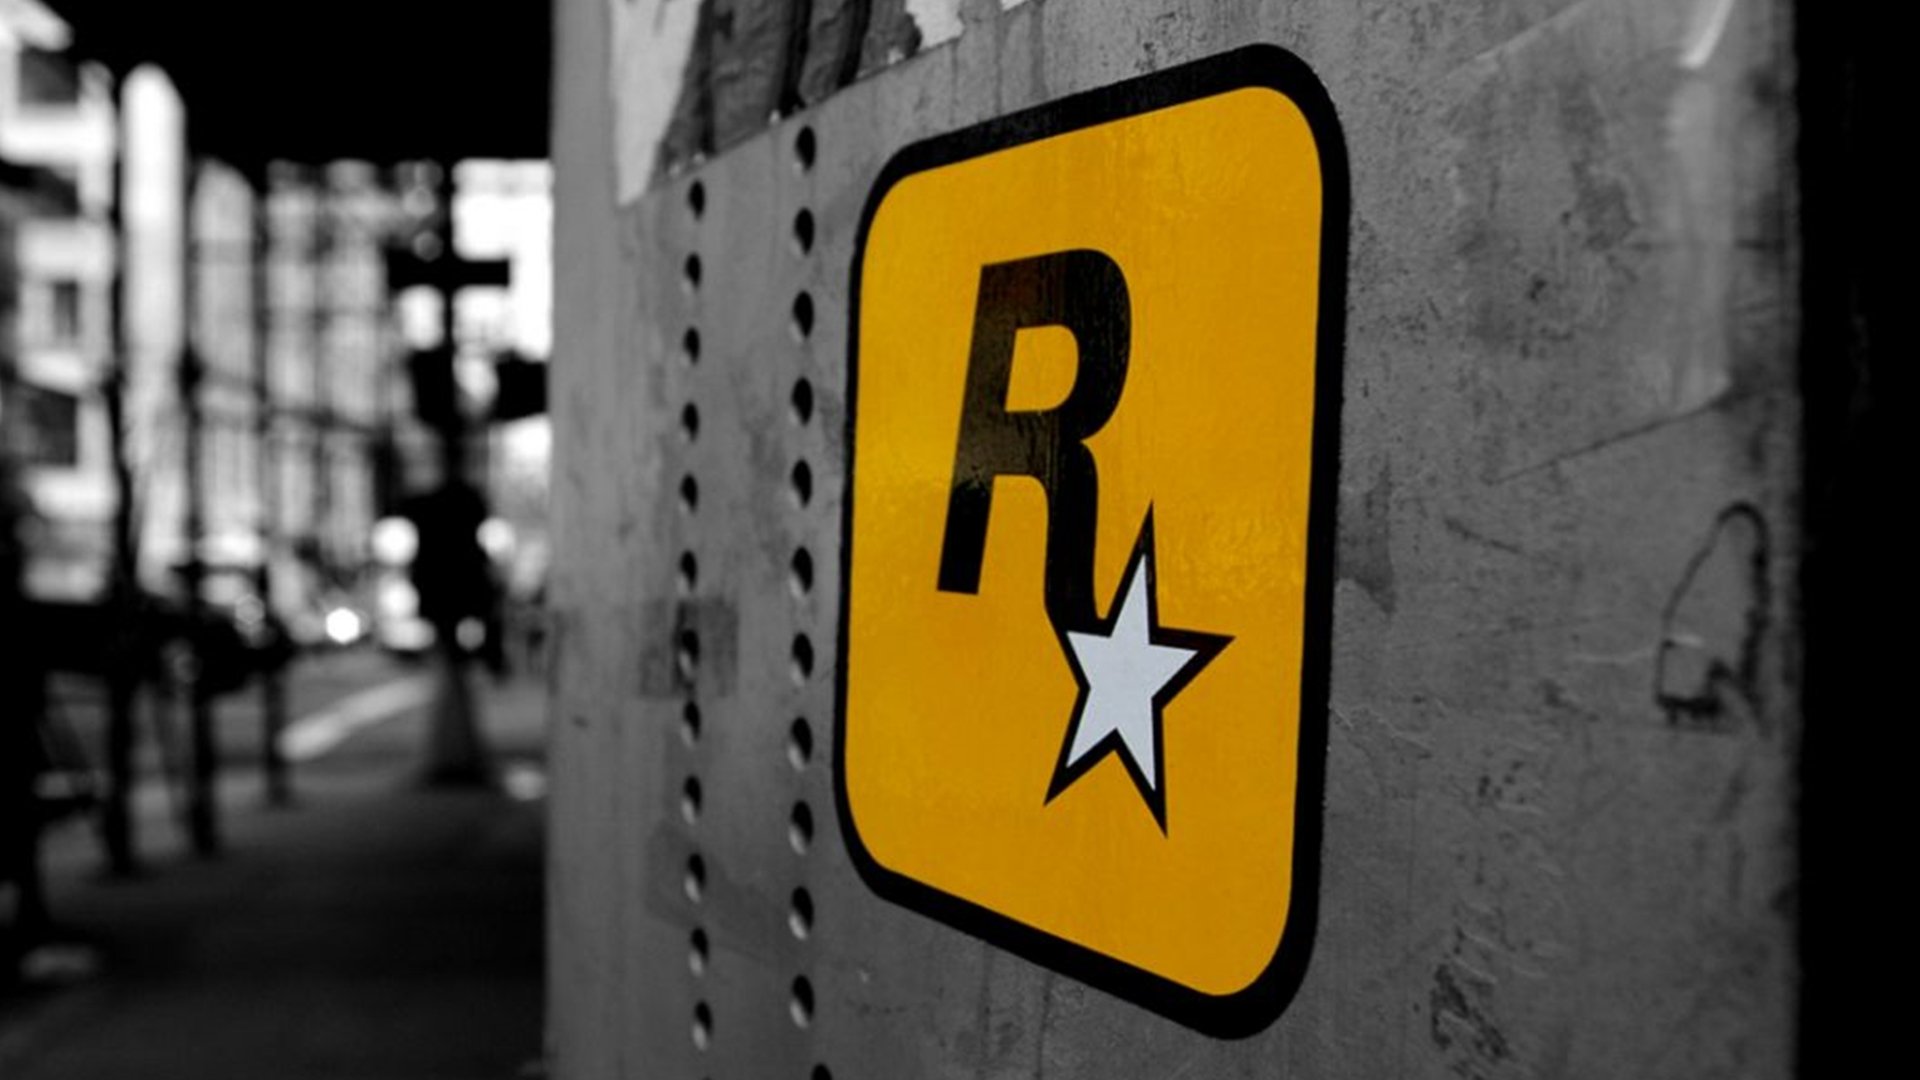 Recentemente a Rockstar Games alugou um hotel para contratar game testers, agora a filial começou a contratar novamente para diversas áreas.